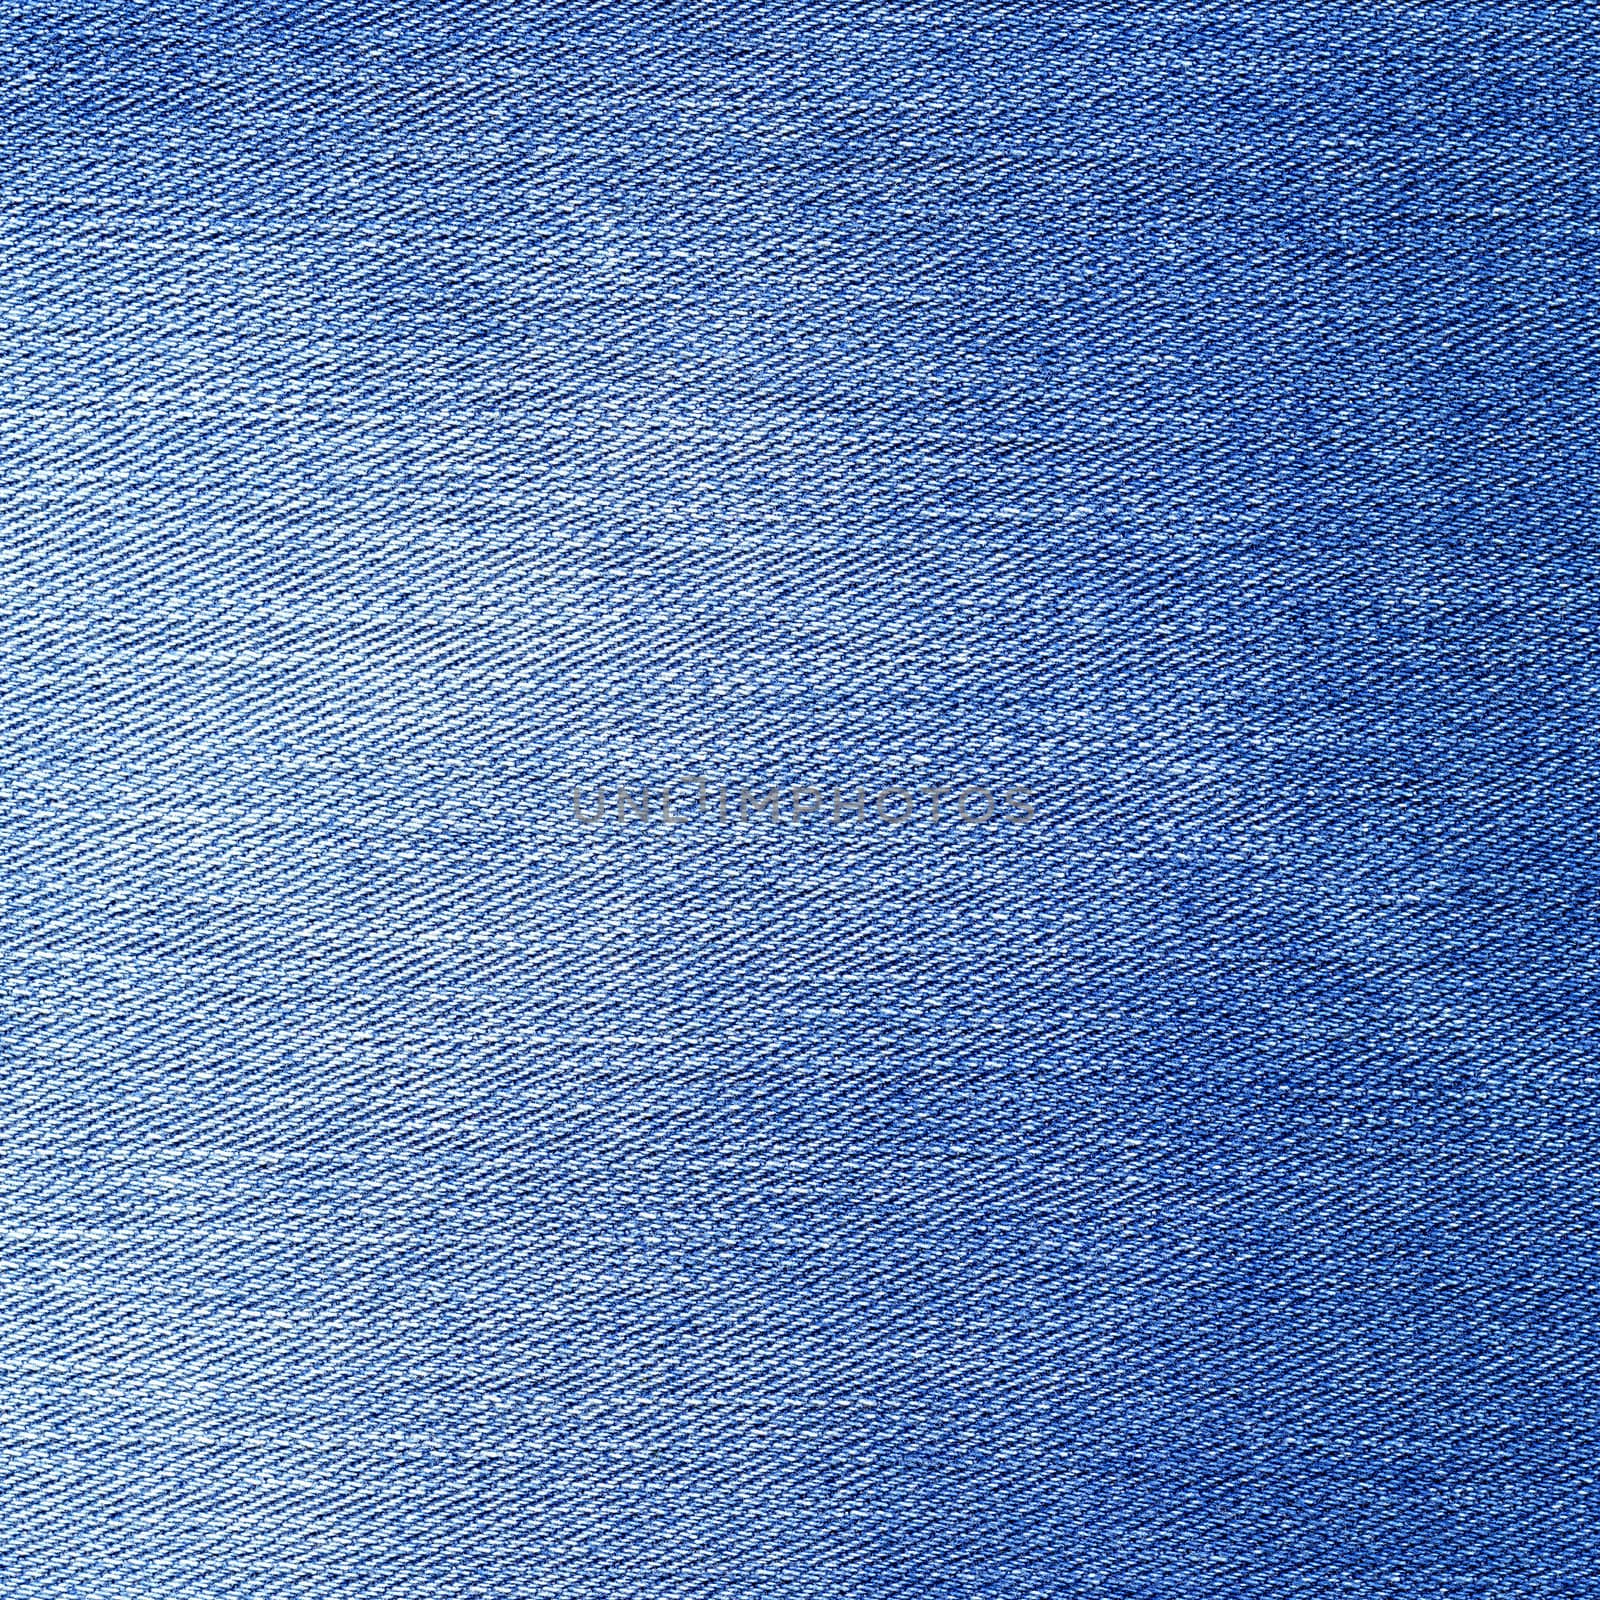 Denim texture. Light blue color jeans background.